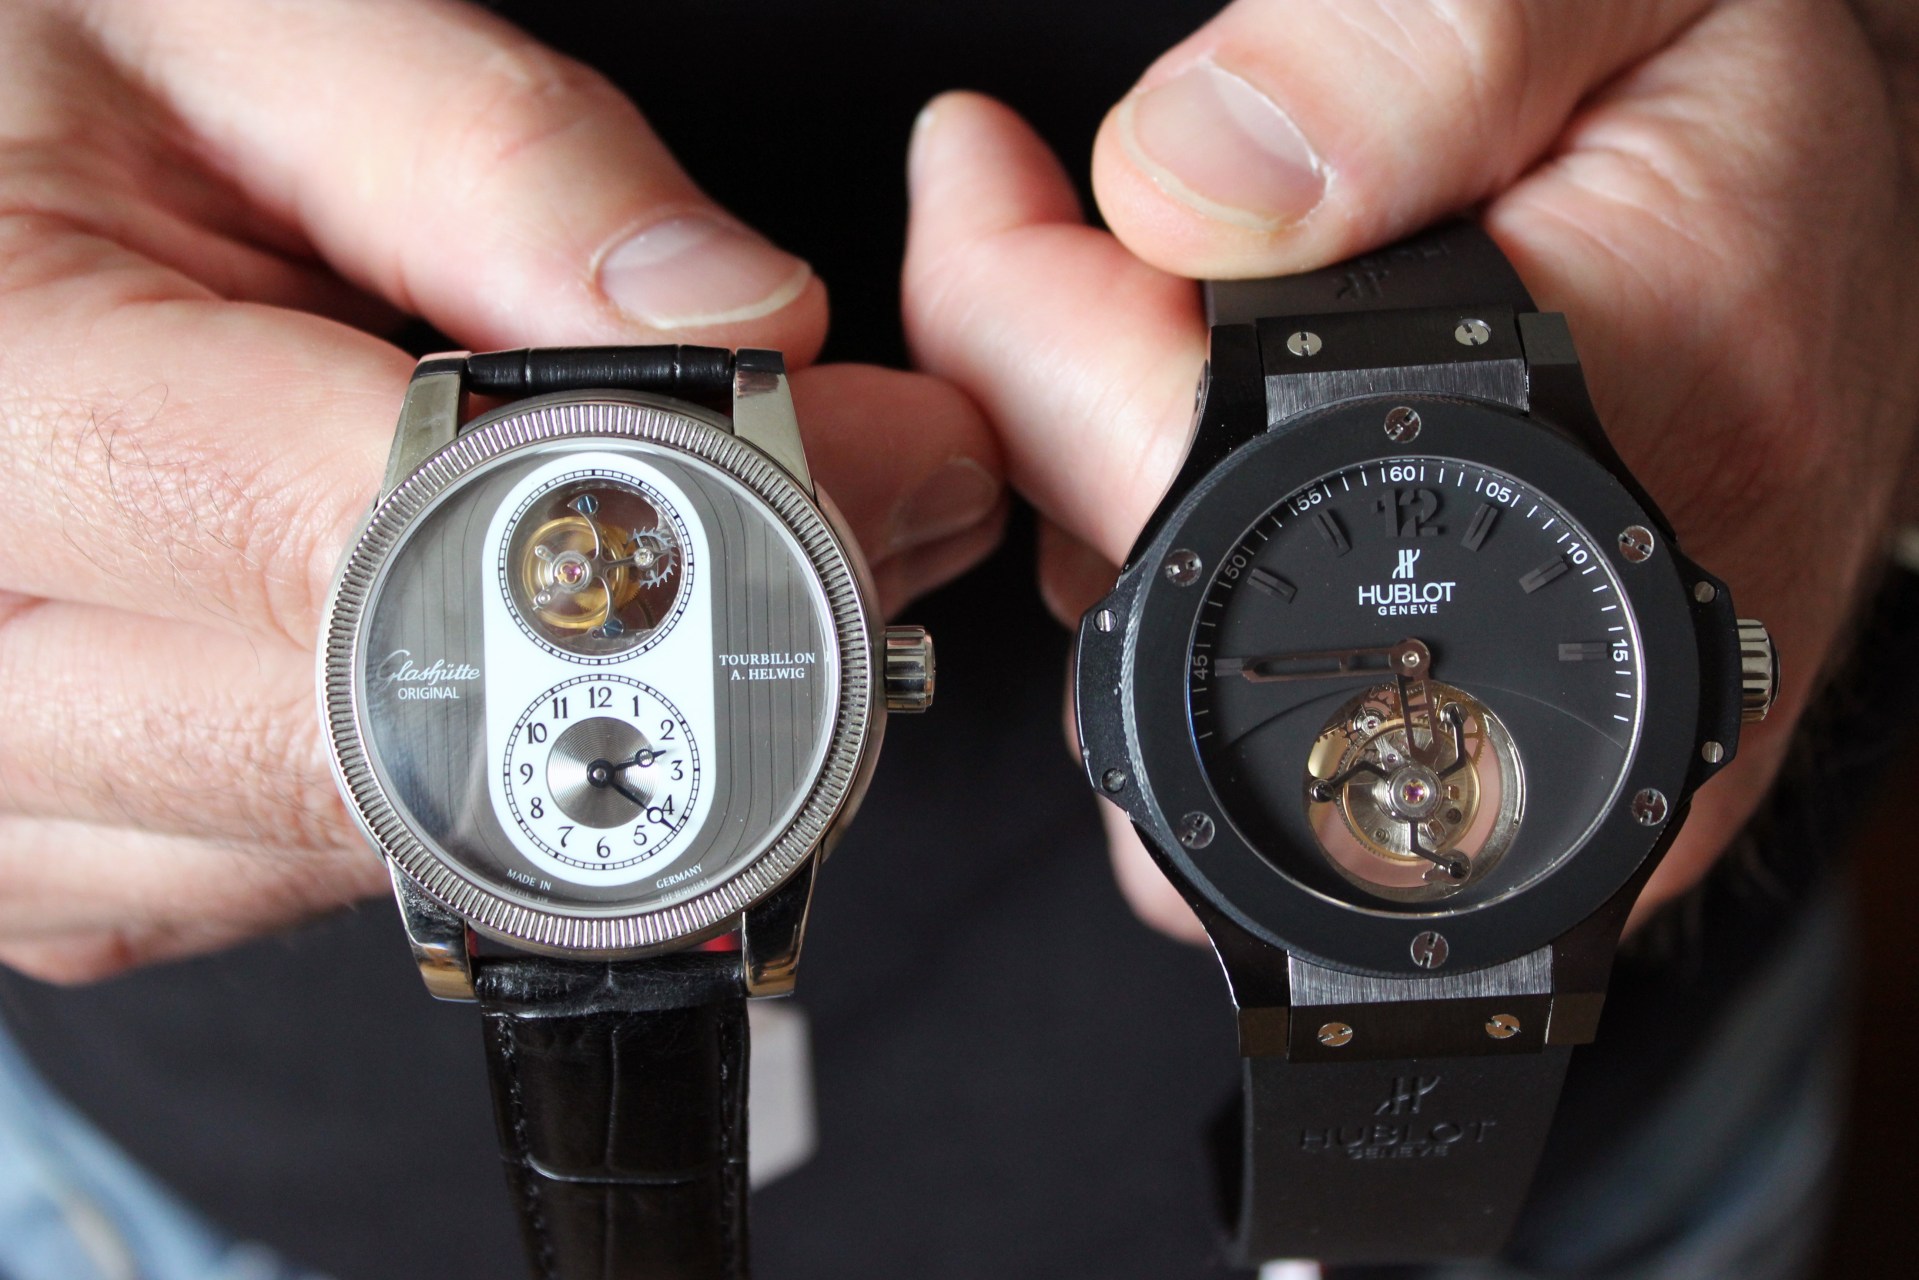 中国製の最高級偽時計、スイス時計産業の脅威に - SWI swissinfo.ch